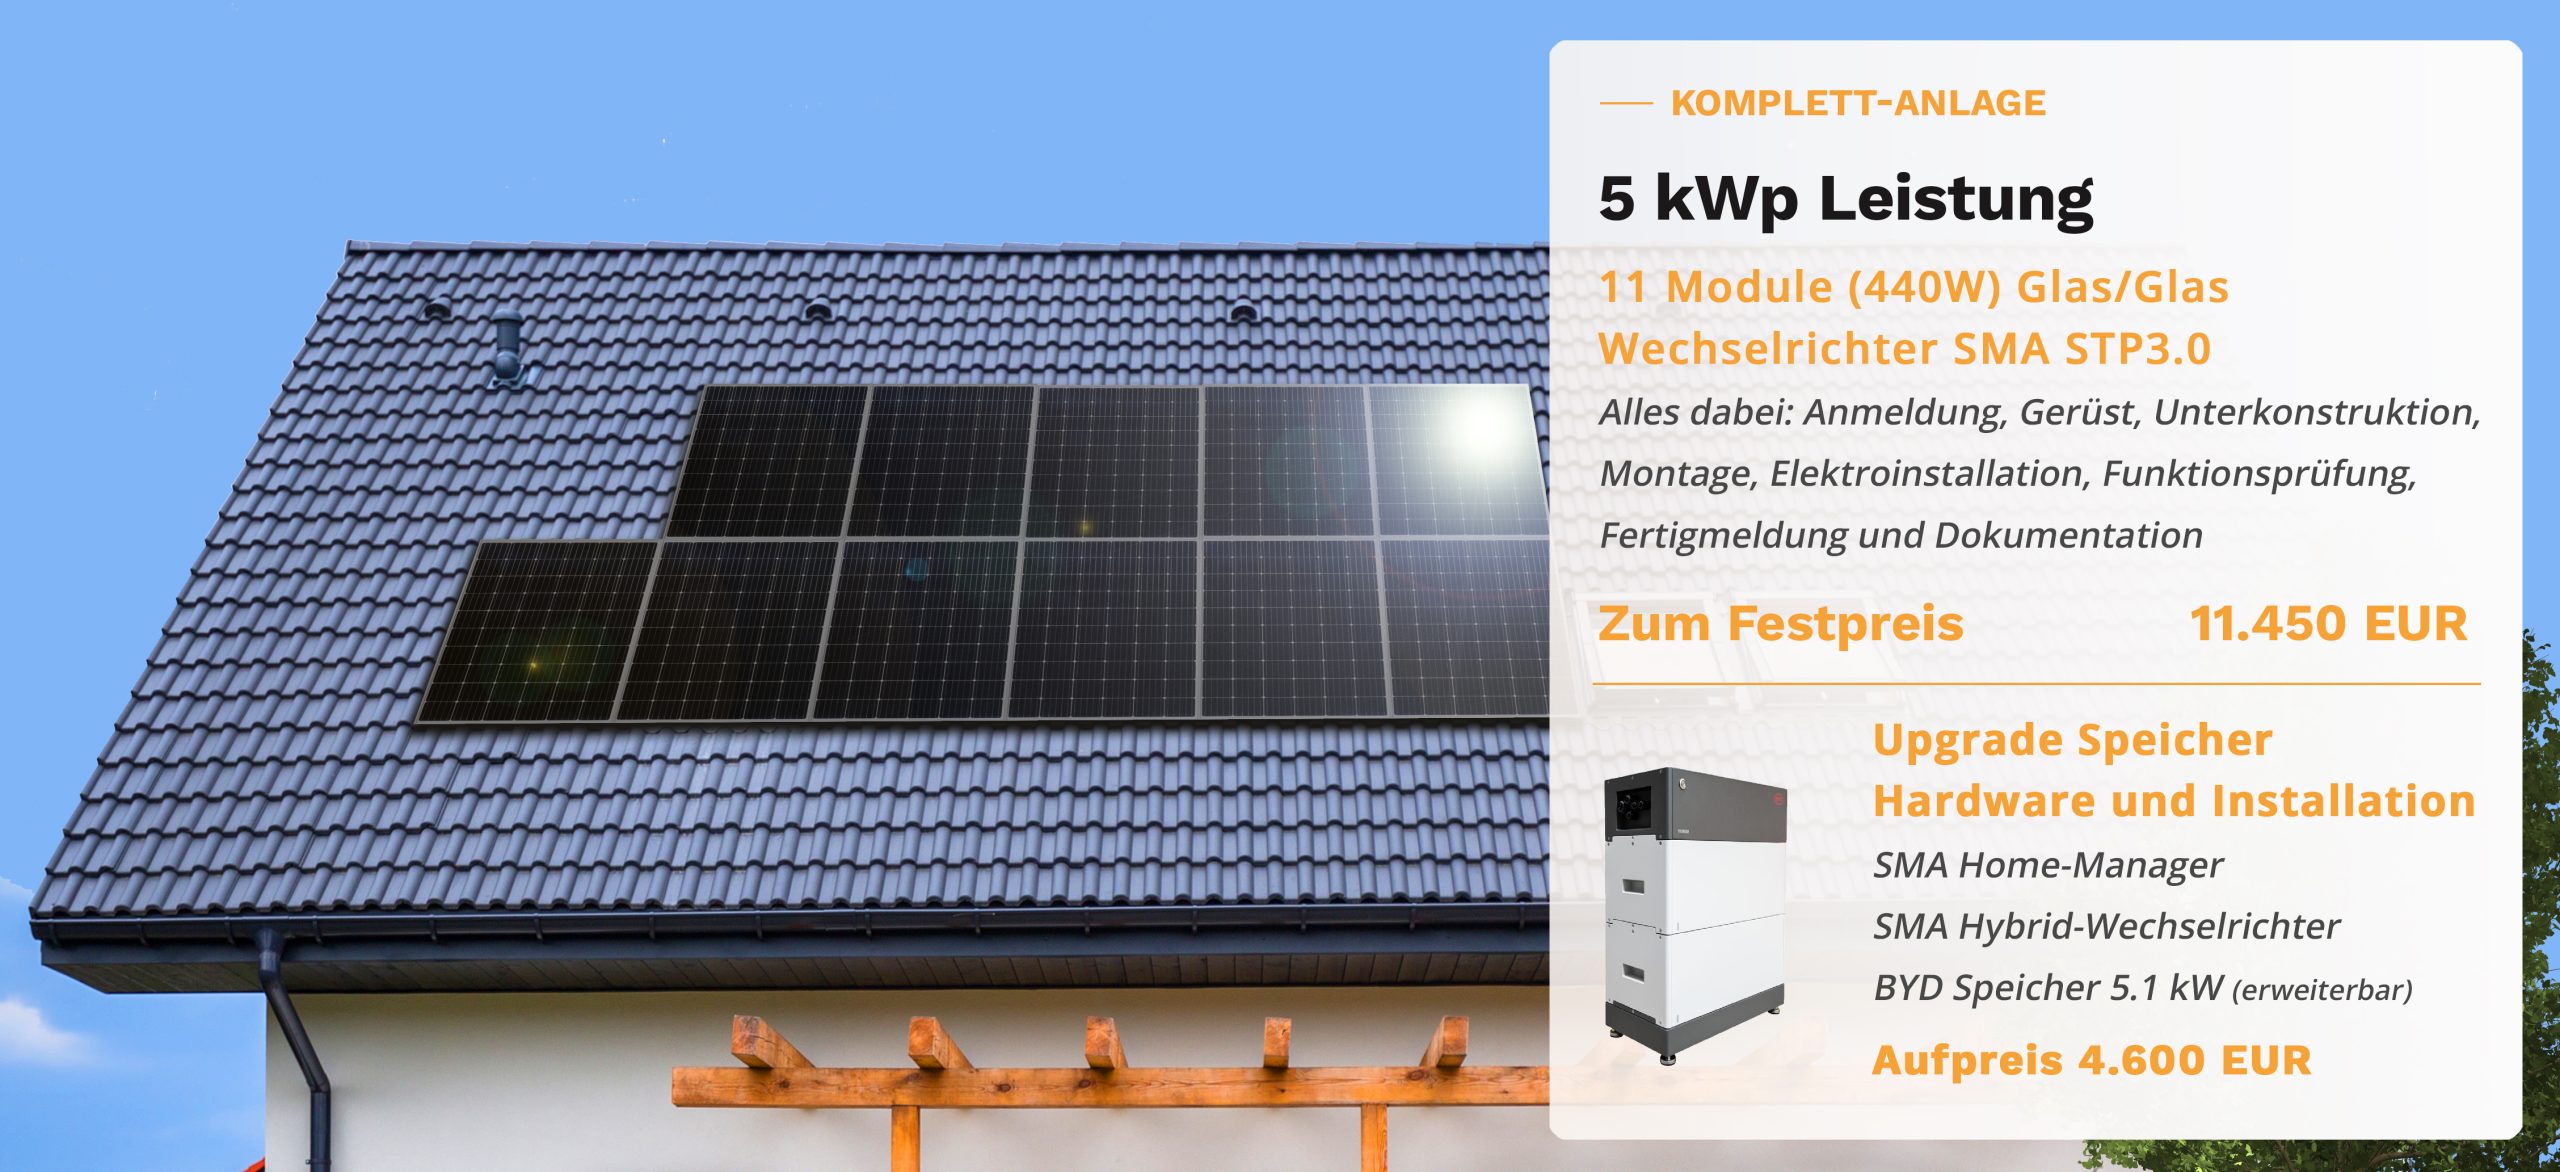 Preis für eine 5kWp Photovoltaik Anlage 10.400 Euro
